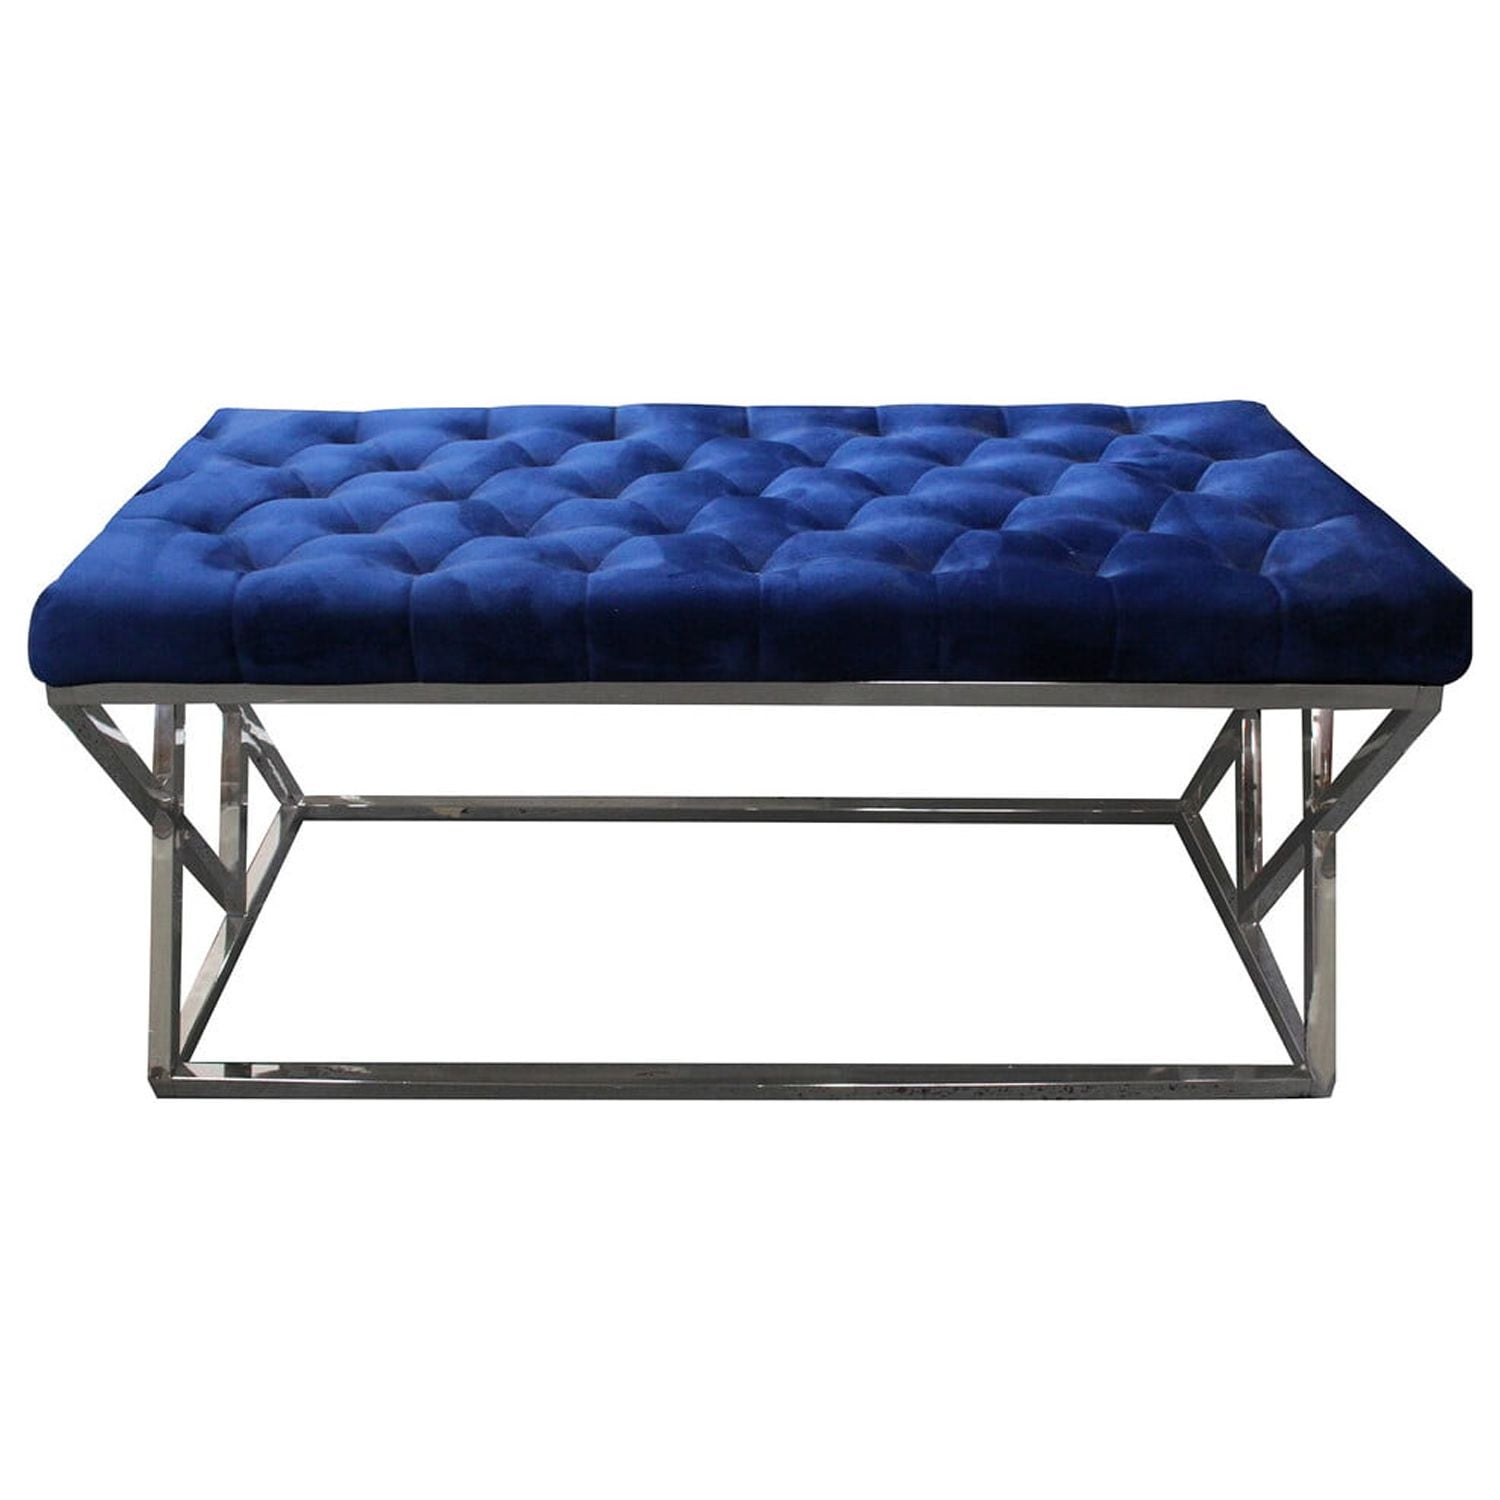 E11 Bench Blue Tufted Velvet Upholstered Bench, Blue